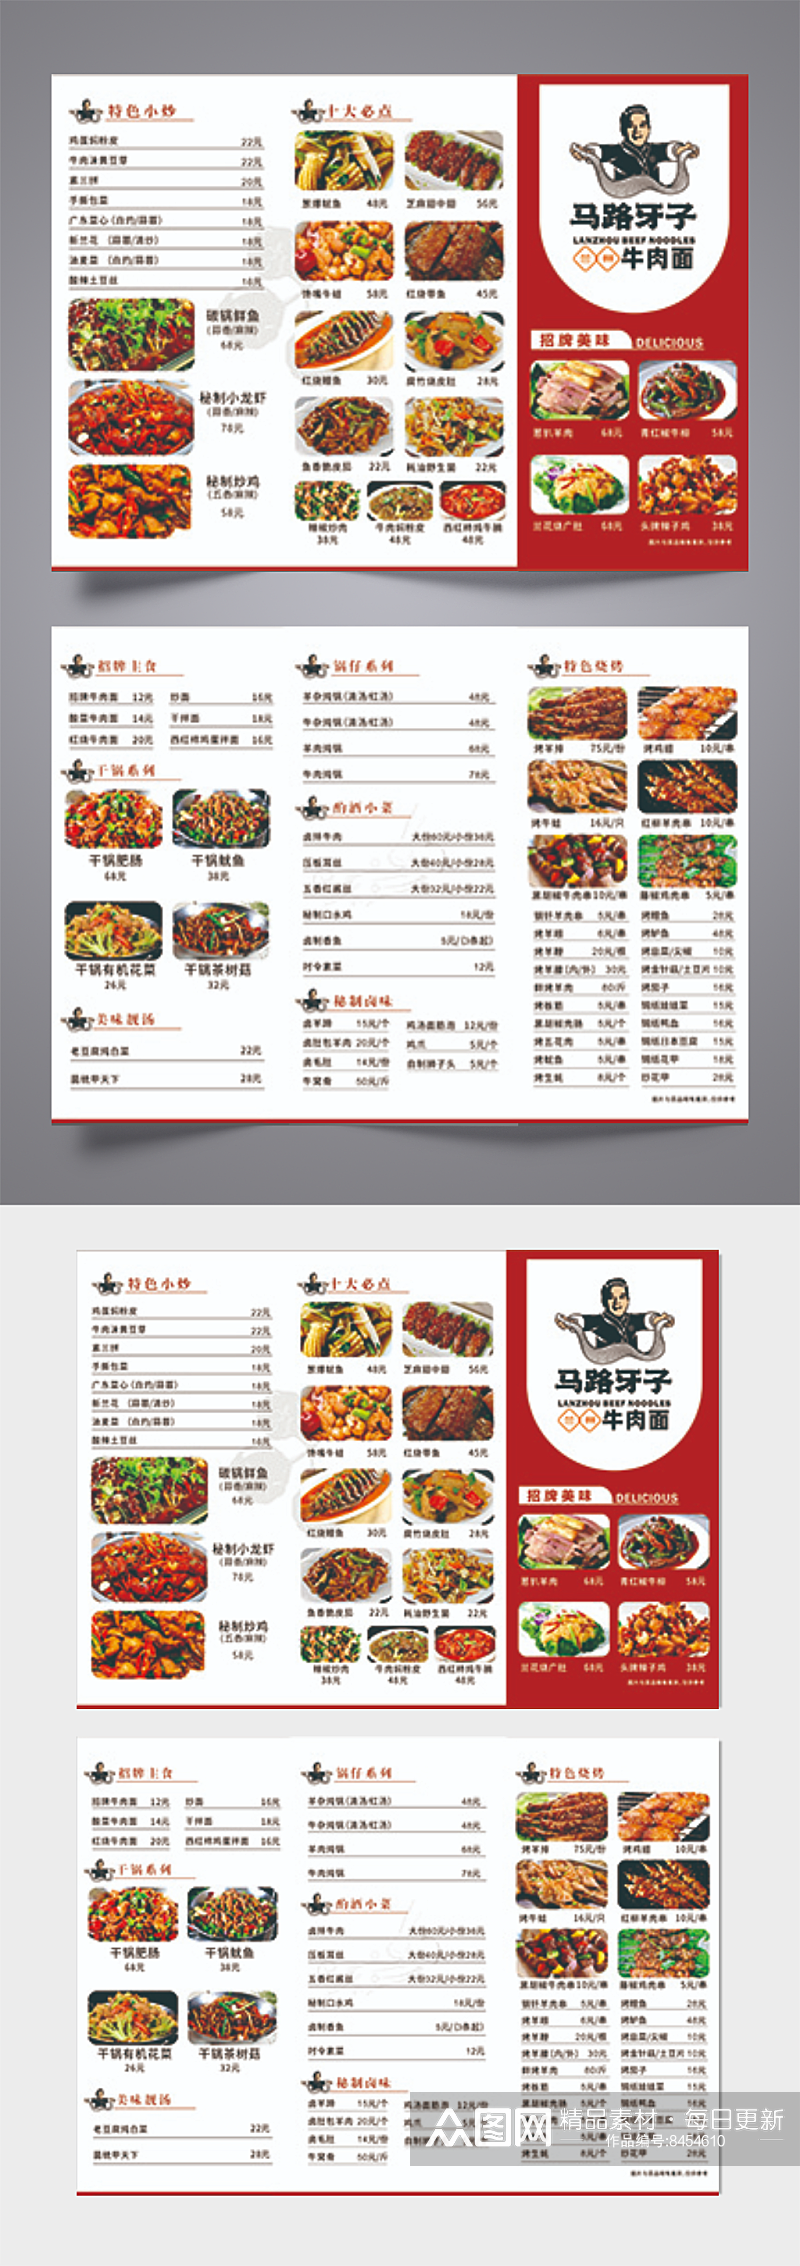 中国红高端大气菜单素材